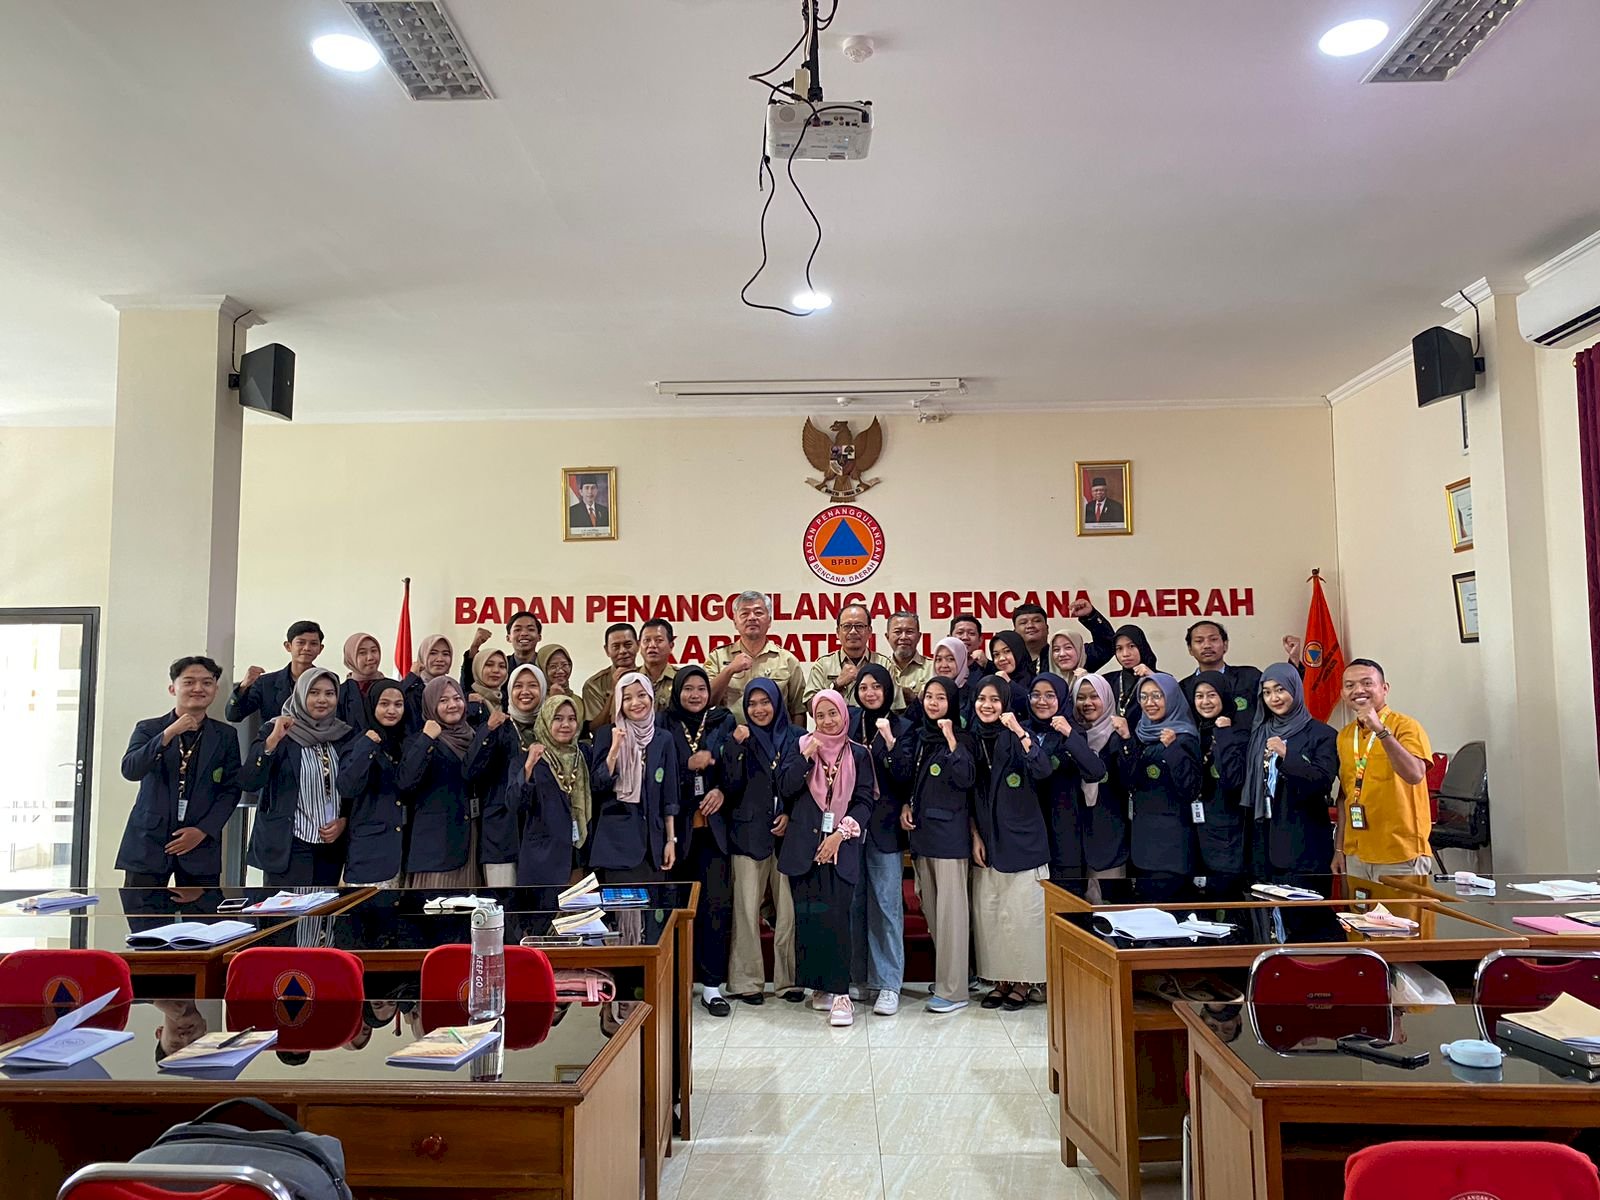 Penerimaan Mahasiswa Magang Periode II UNISA Yogyakarta di BPBD Kabupaten Klaten